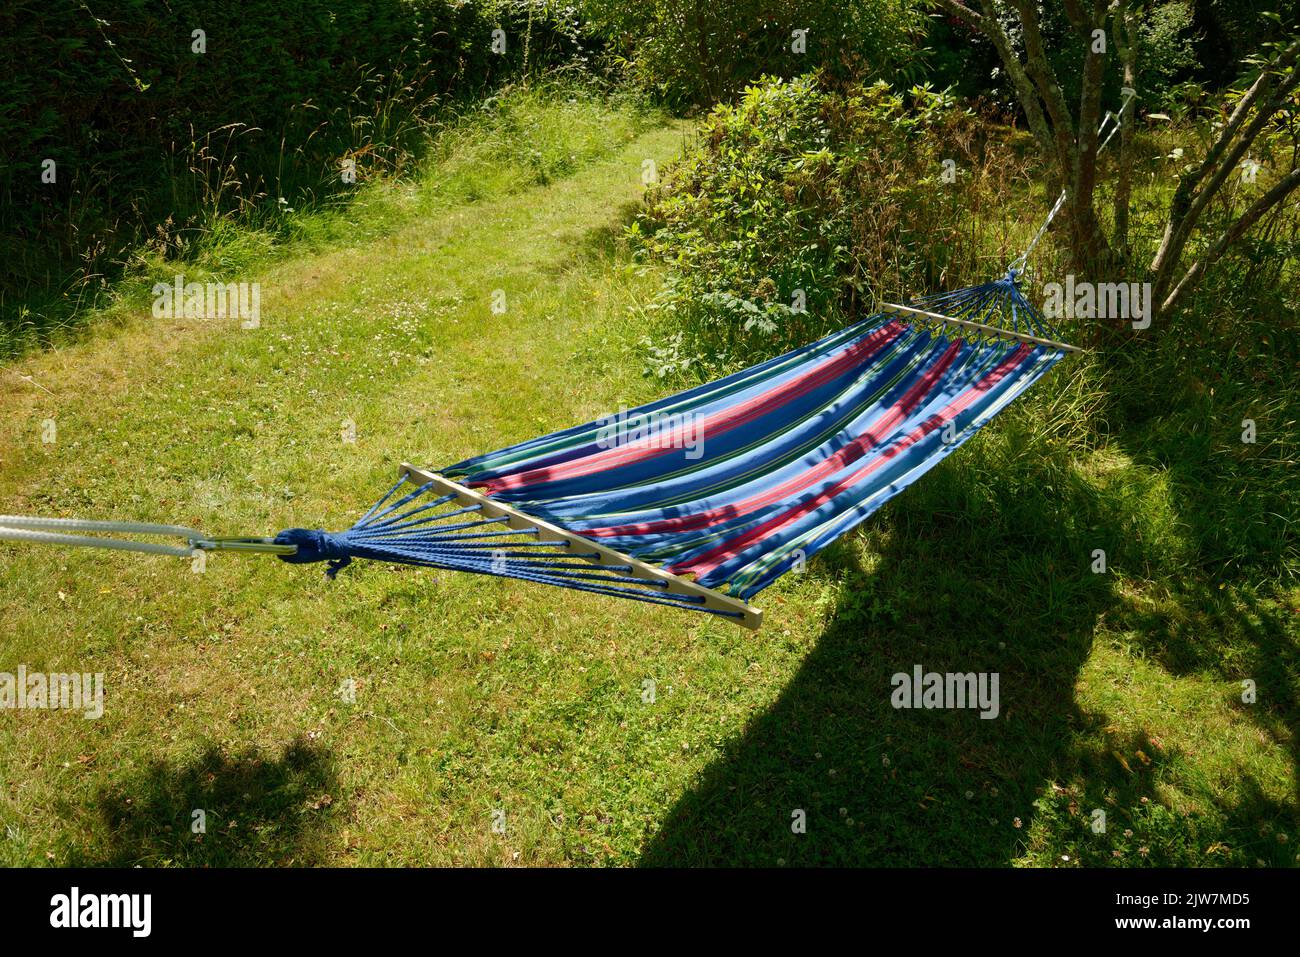 Un'amaca da giardino in estate. Rilassatevi nel comfort sospeso in un'amaca in morbido tessuto alla luce del sole. Foto Stock